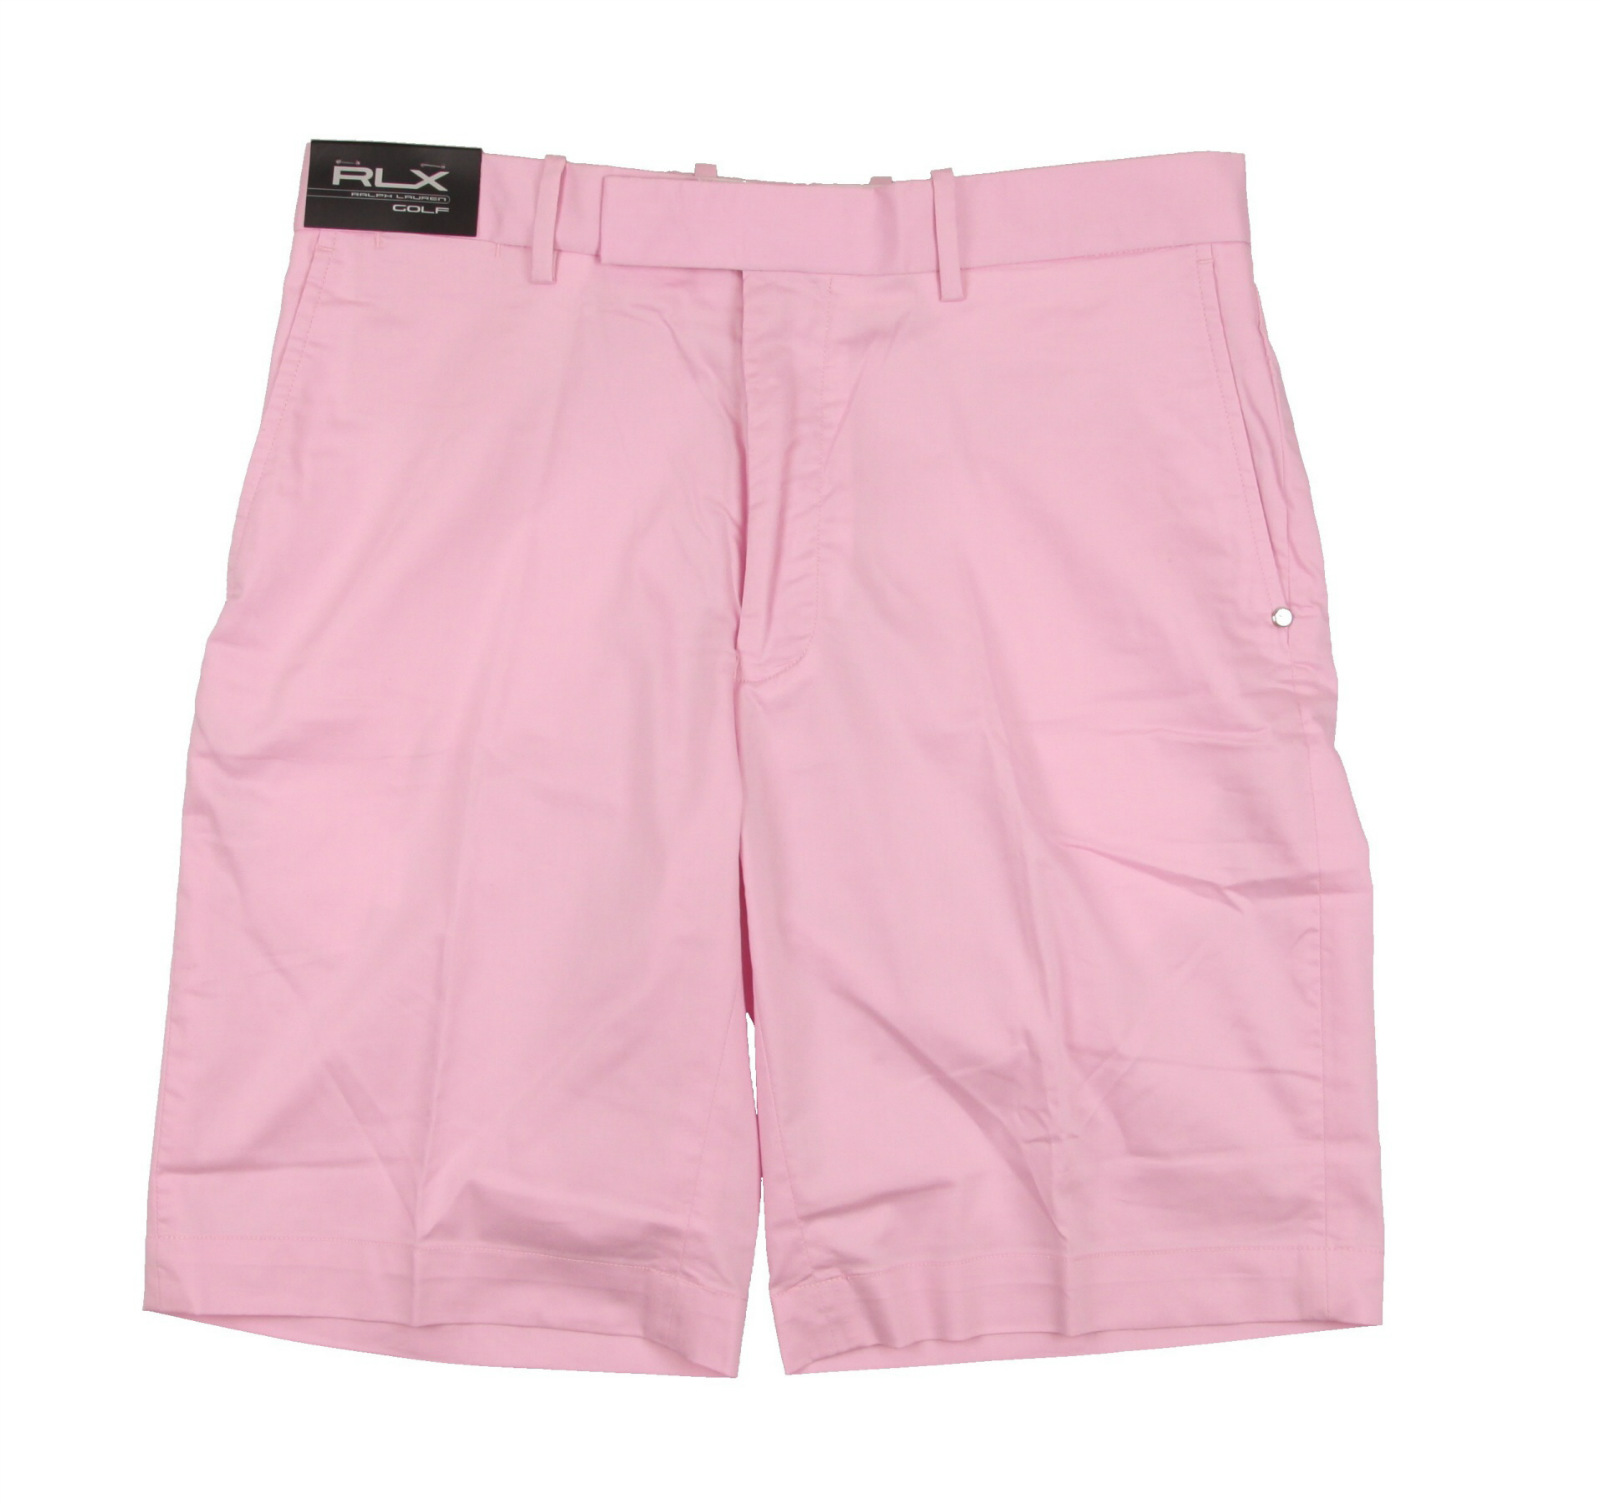 NEW MEN'S Ralph Lauren RLX Performance Golf Shorts Light Pink 32W | eBay